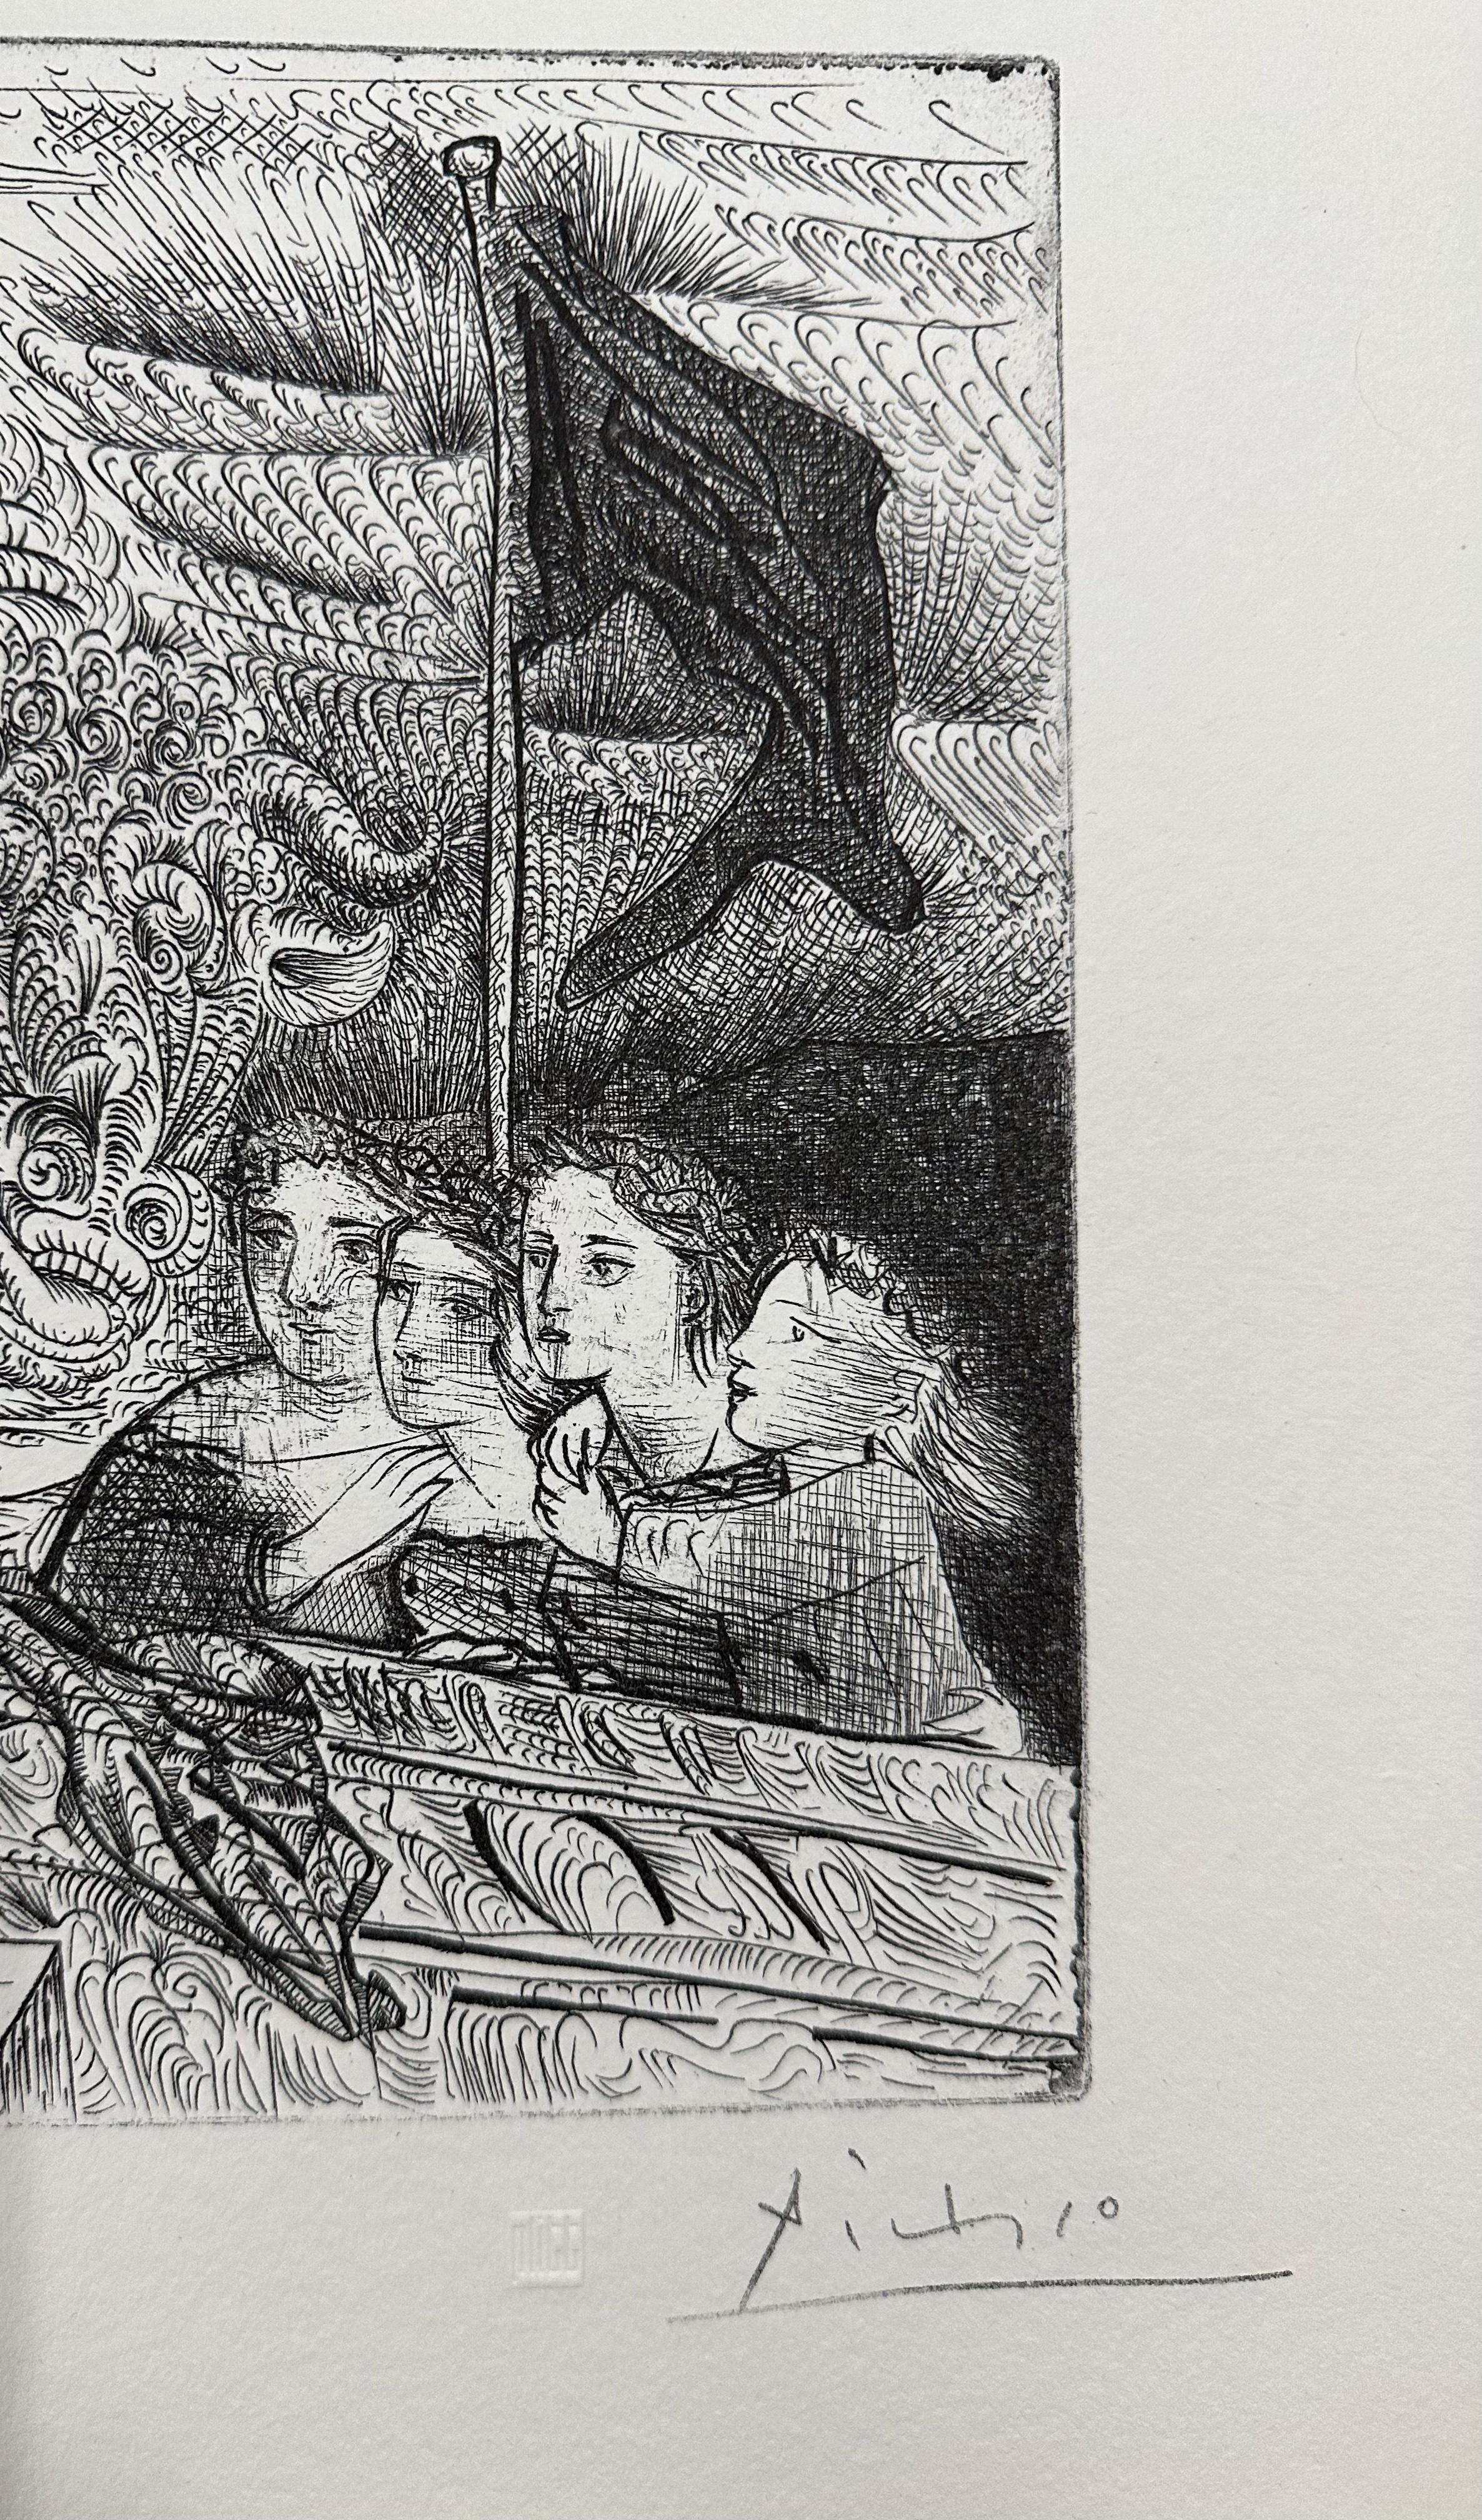 Pablo Picasso, Taureau ailé contemplé par Quatre Enfants, lithograph - Print by (after) Pablo Picasso